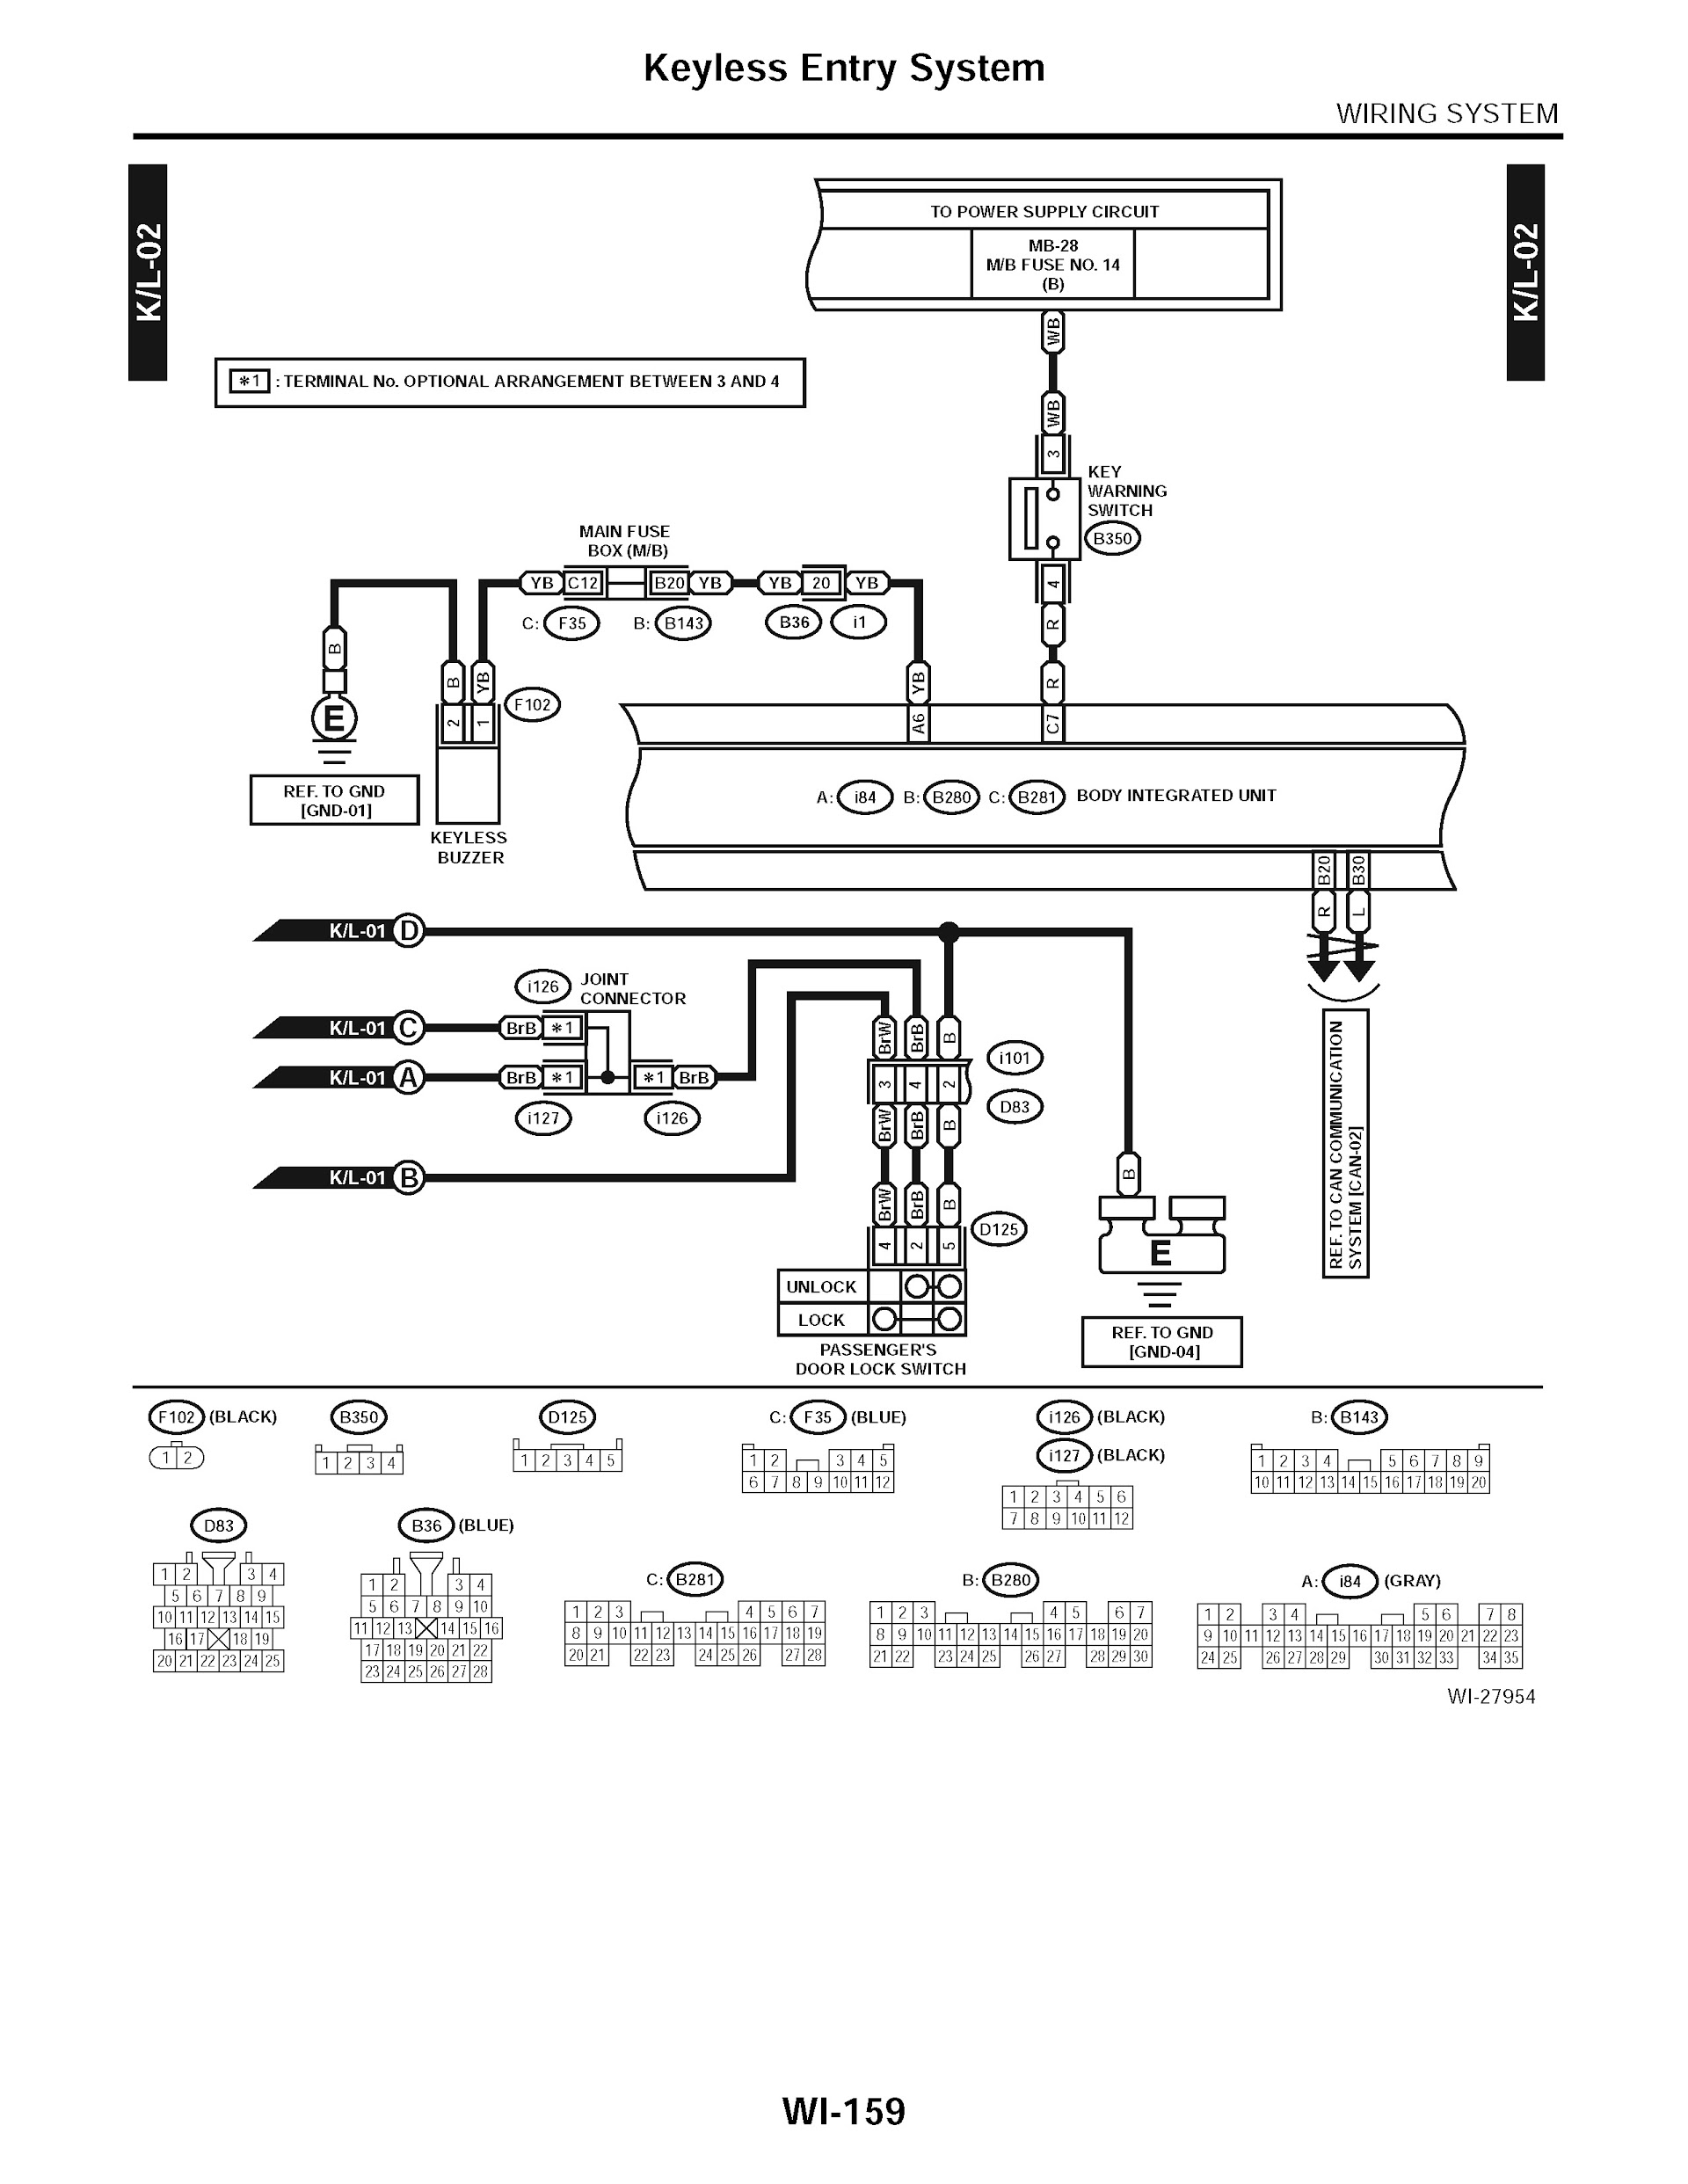 2014 Subaru Tribeca Repair Manual, Keyless Entry System